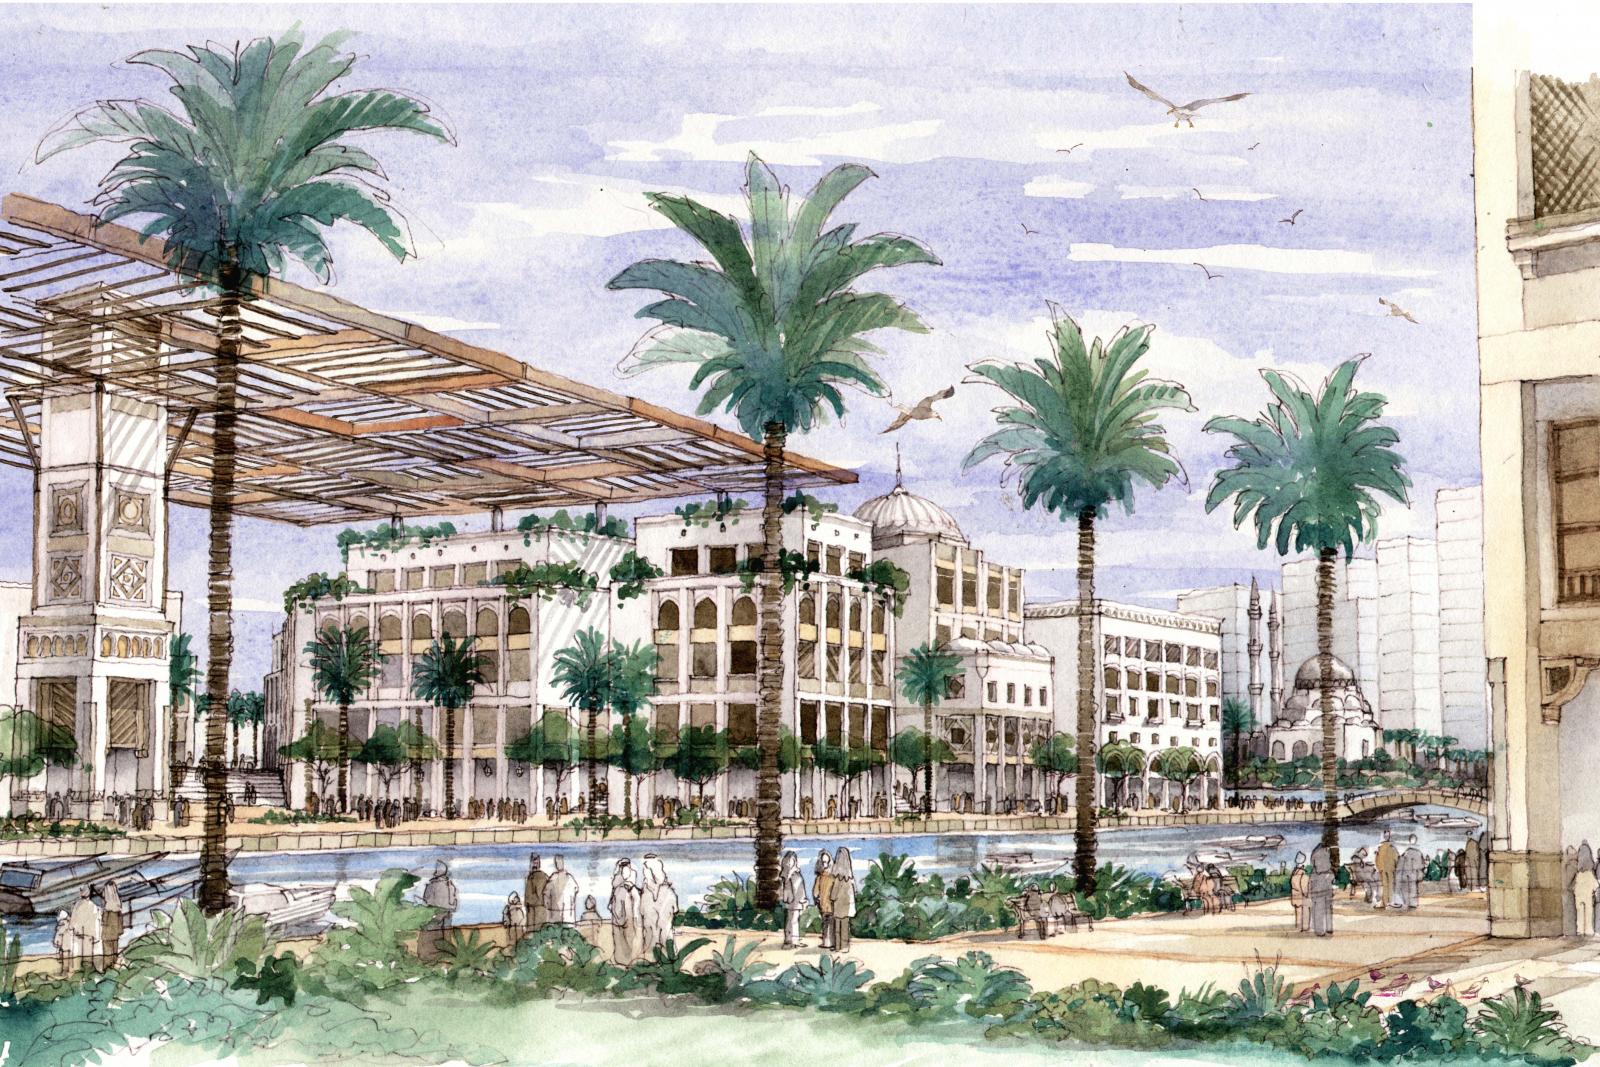 Sharjah Lagoons - Master Planning